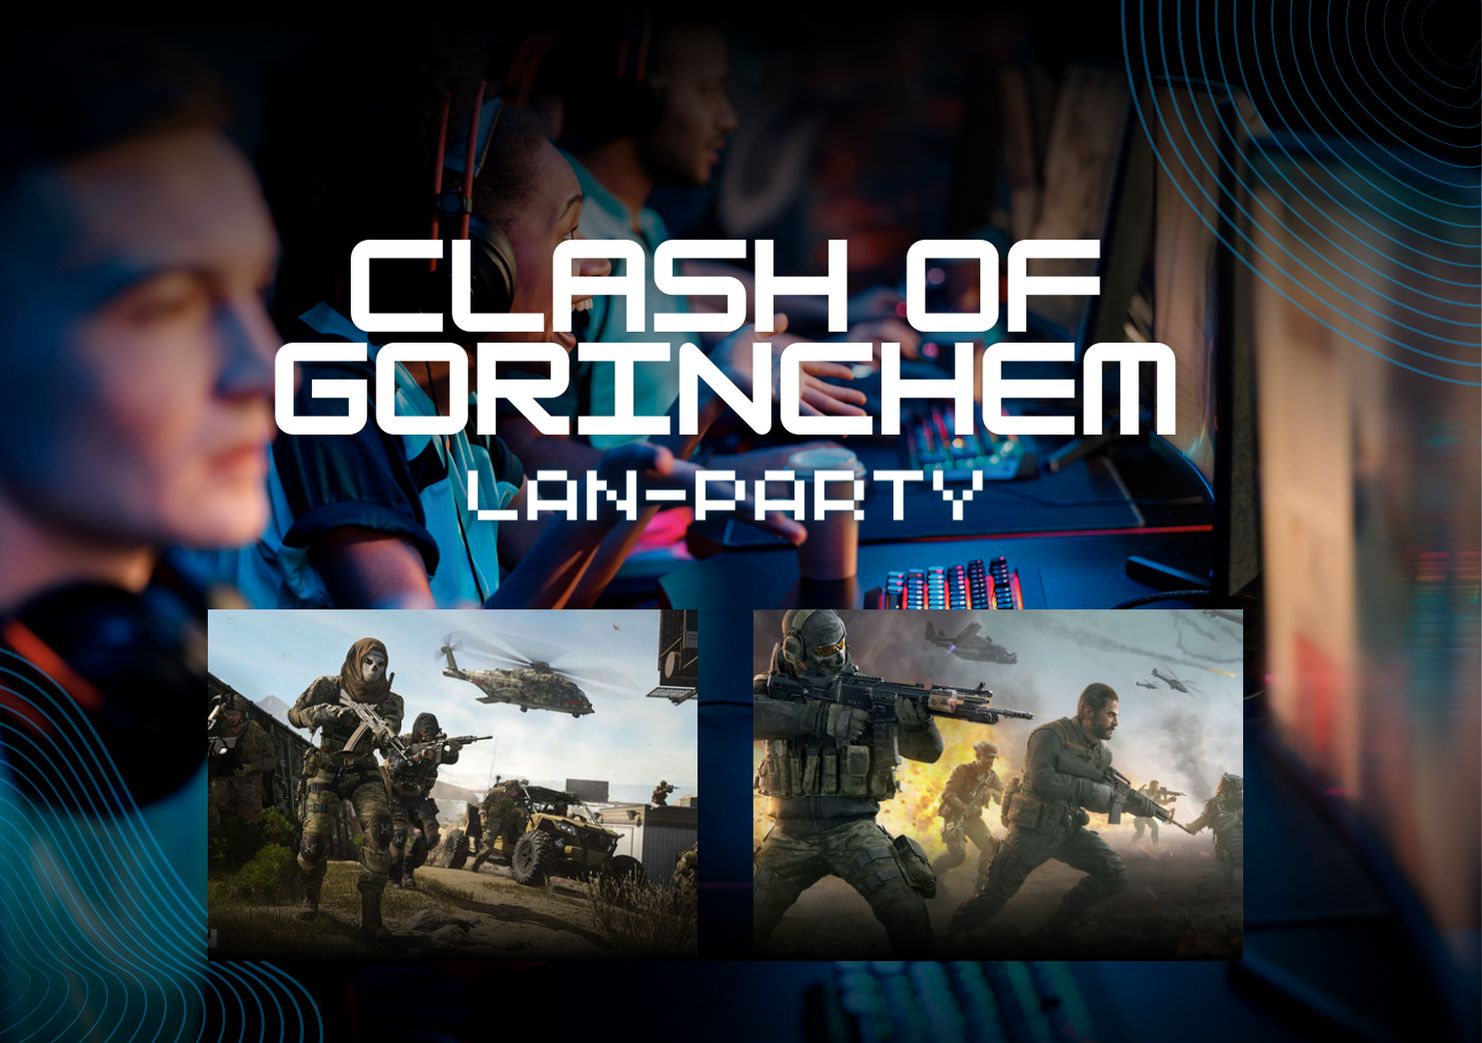 Clash of Gorinchem - Call of Duty